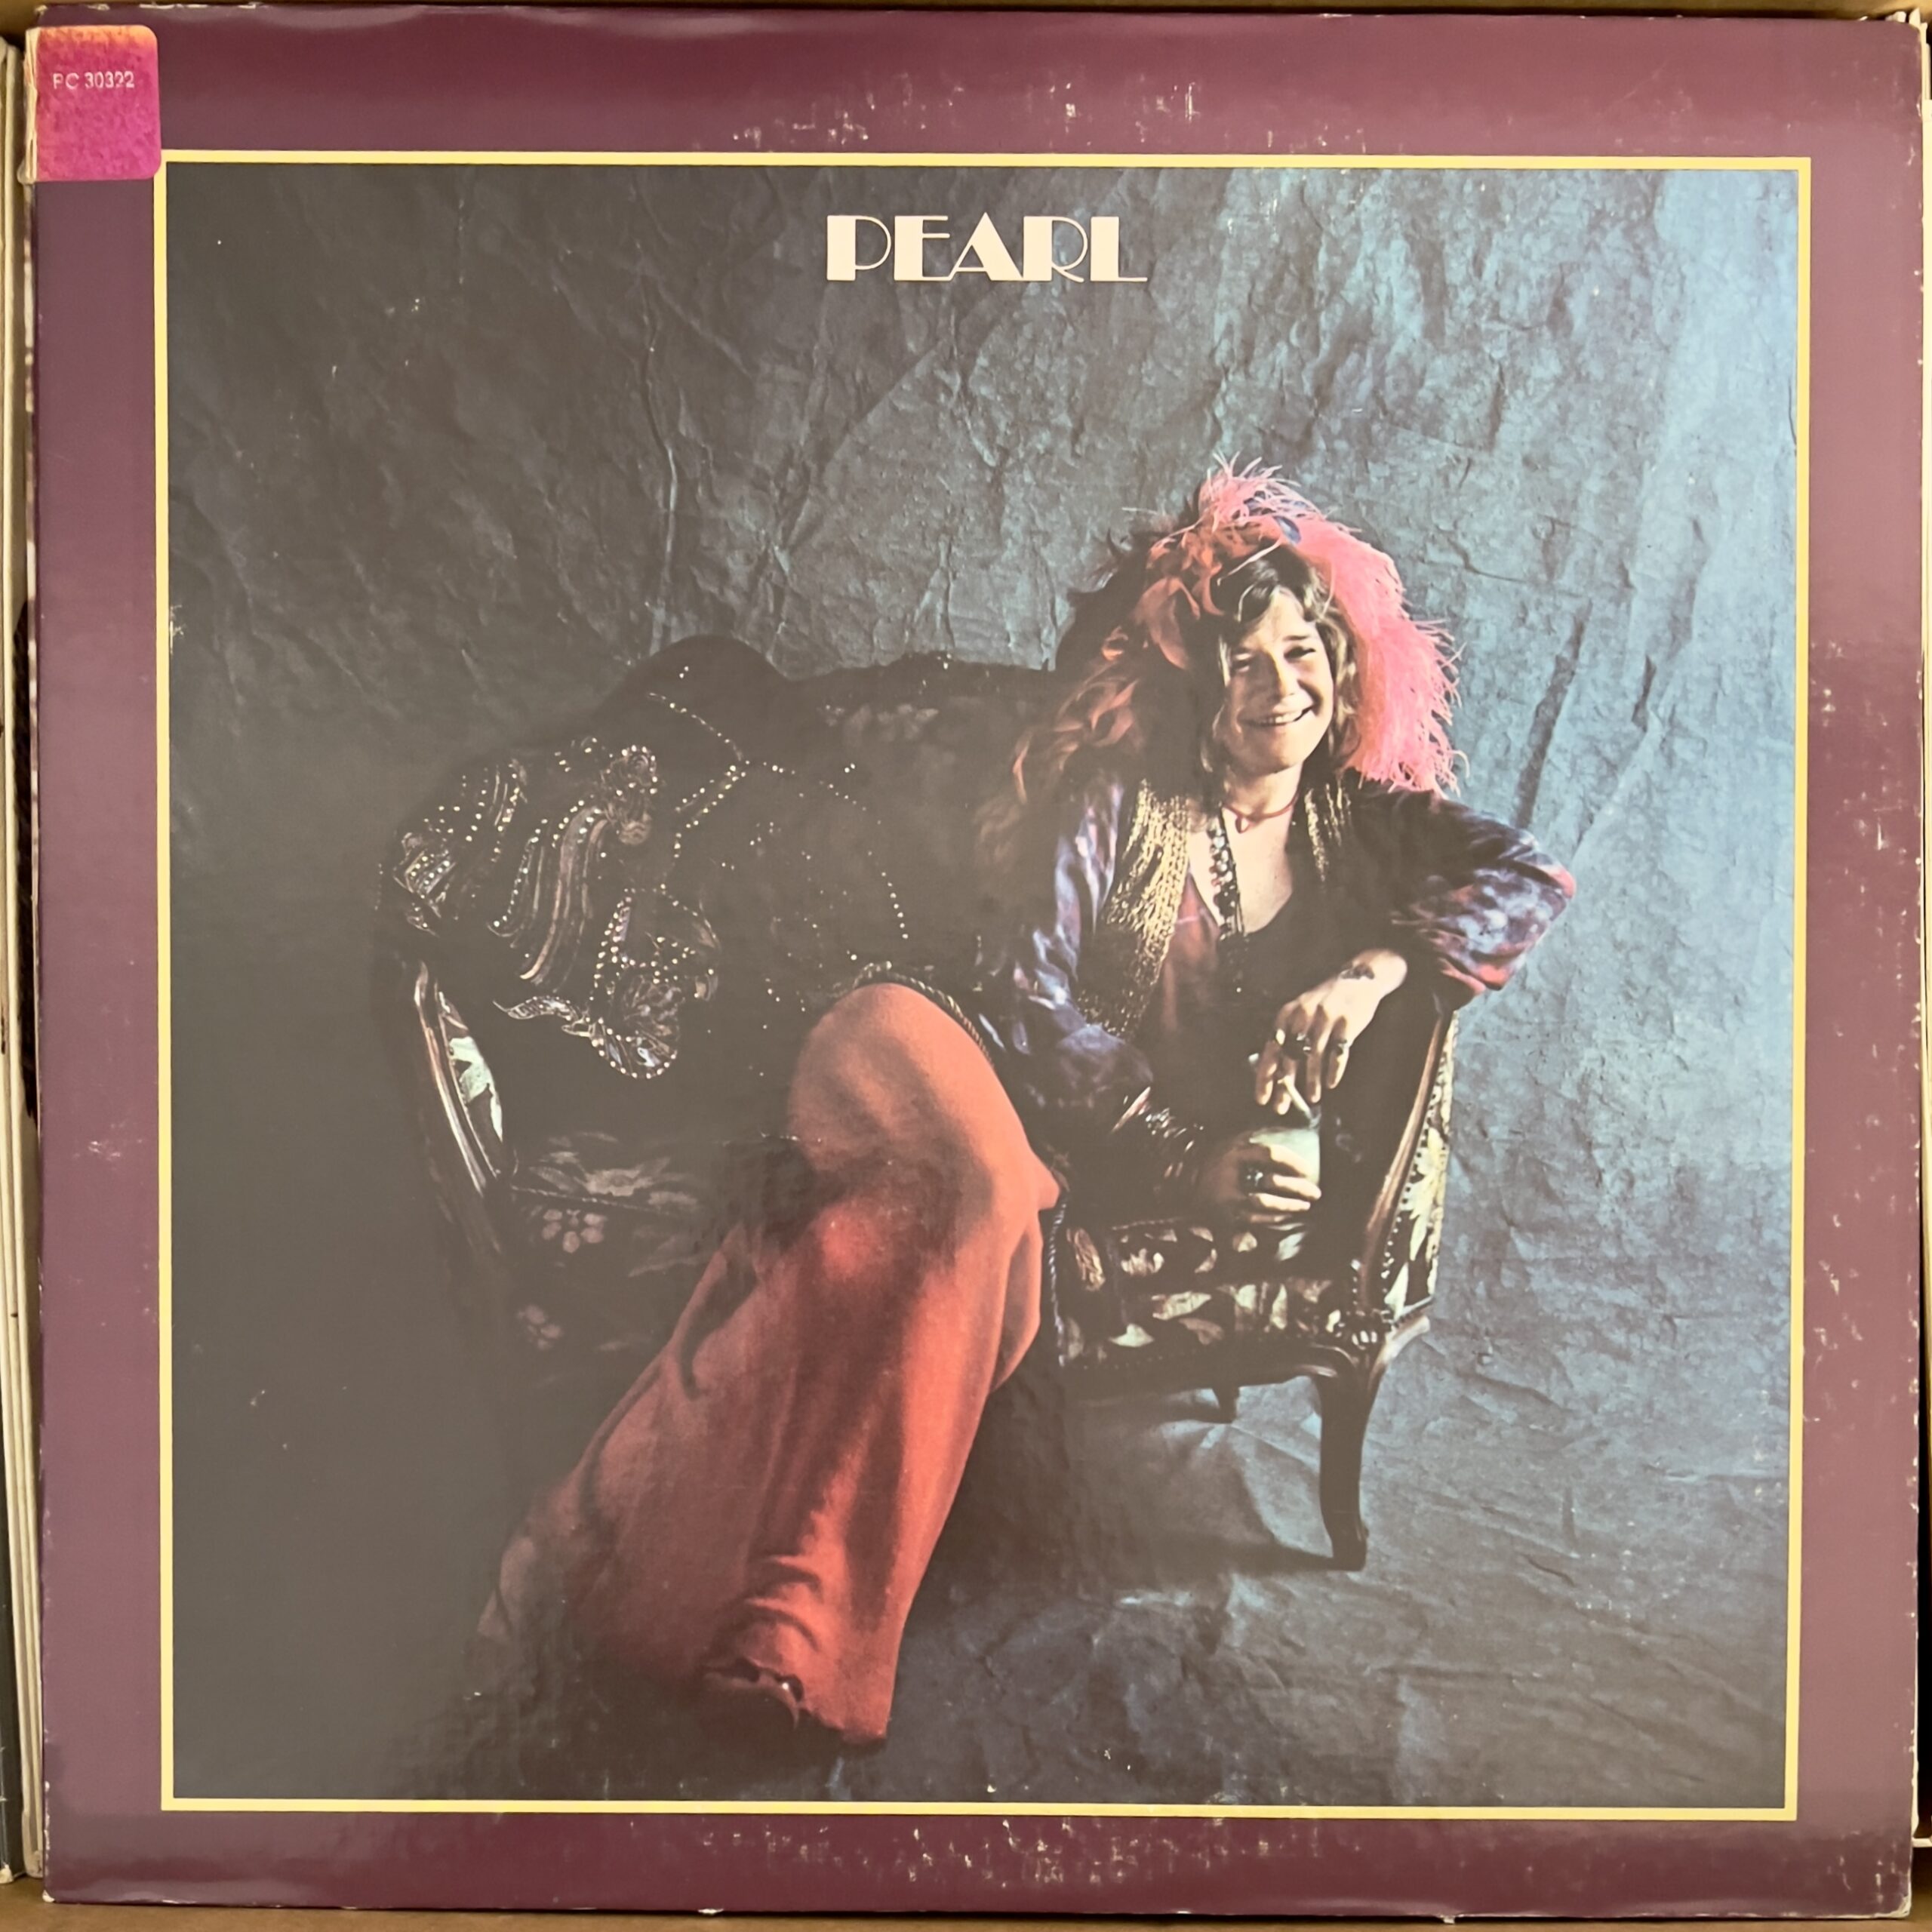 Pearl by Janis Joplin